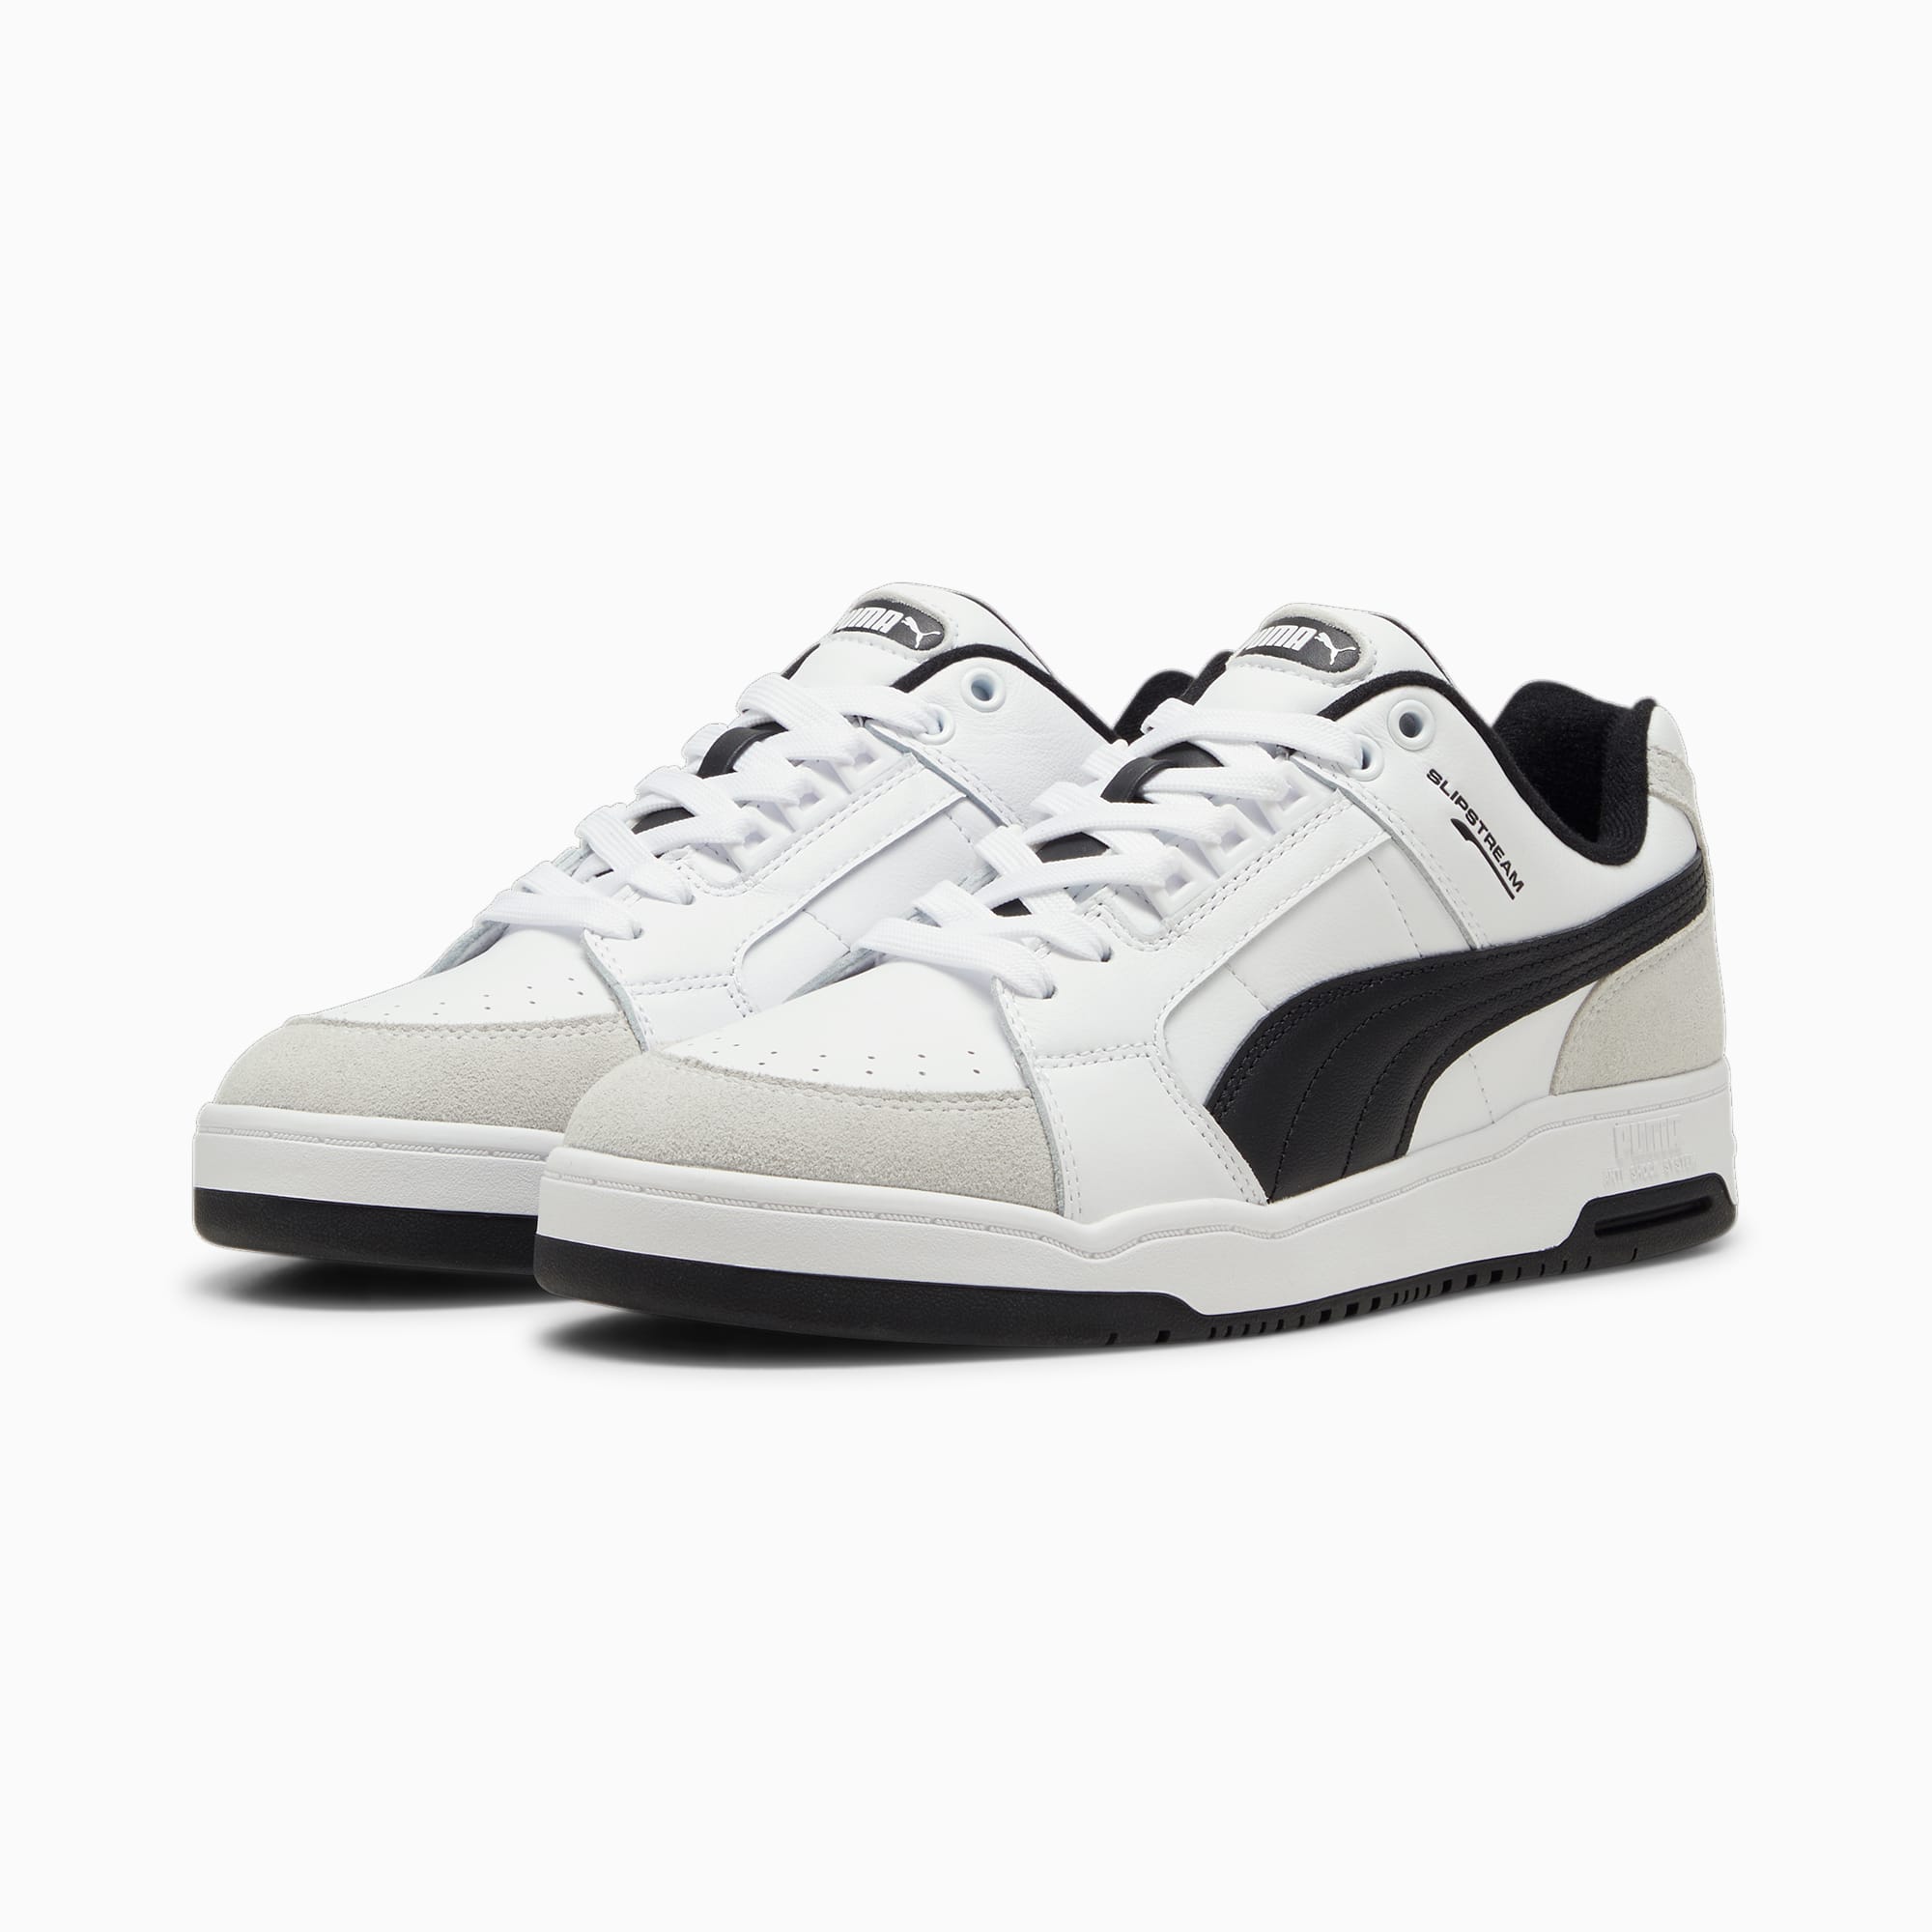 PUMA Slipstream Lo Retro-Sneakers Schuhe, Weiß/Schwarz, Größe: 46, Schuhe